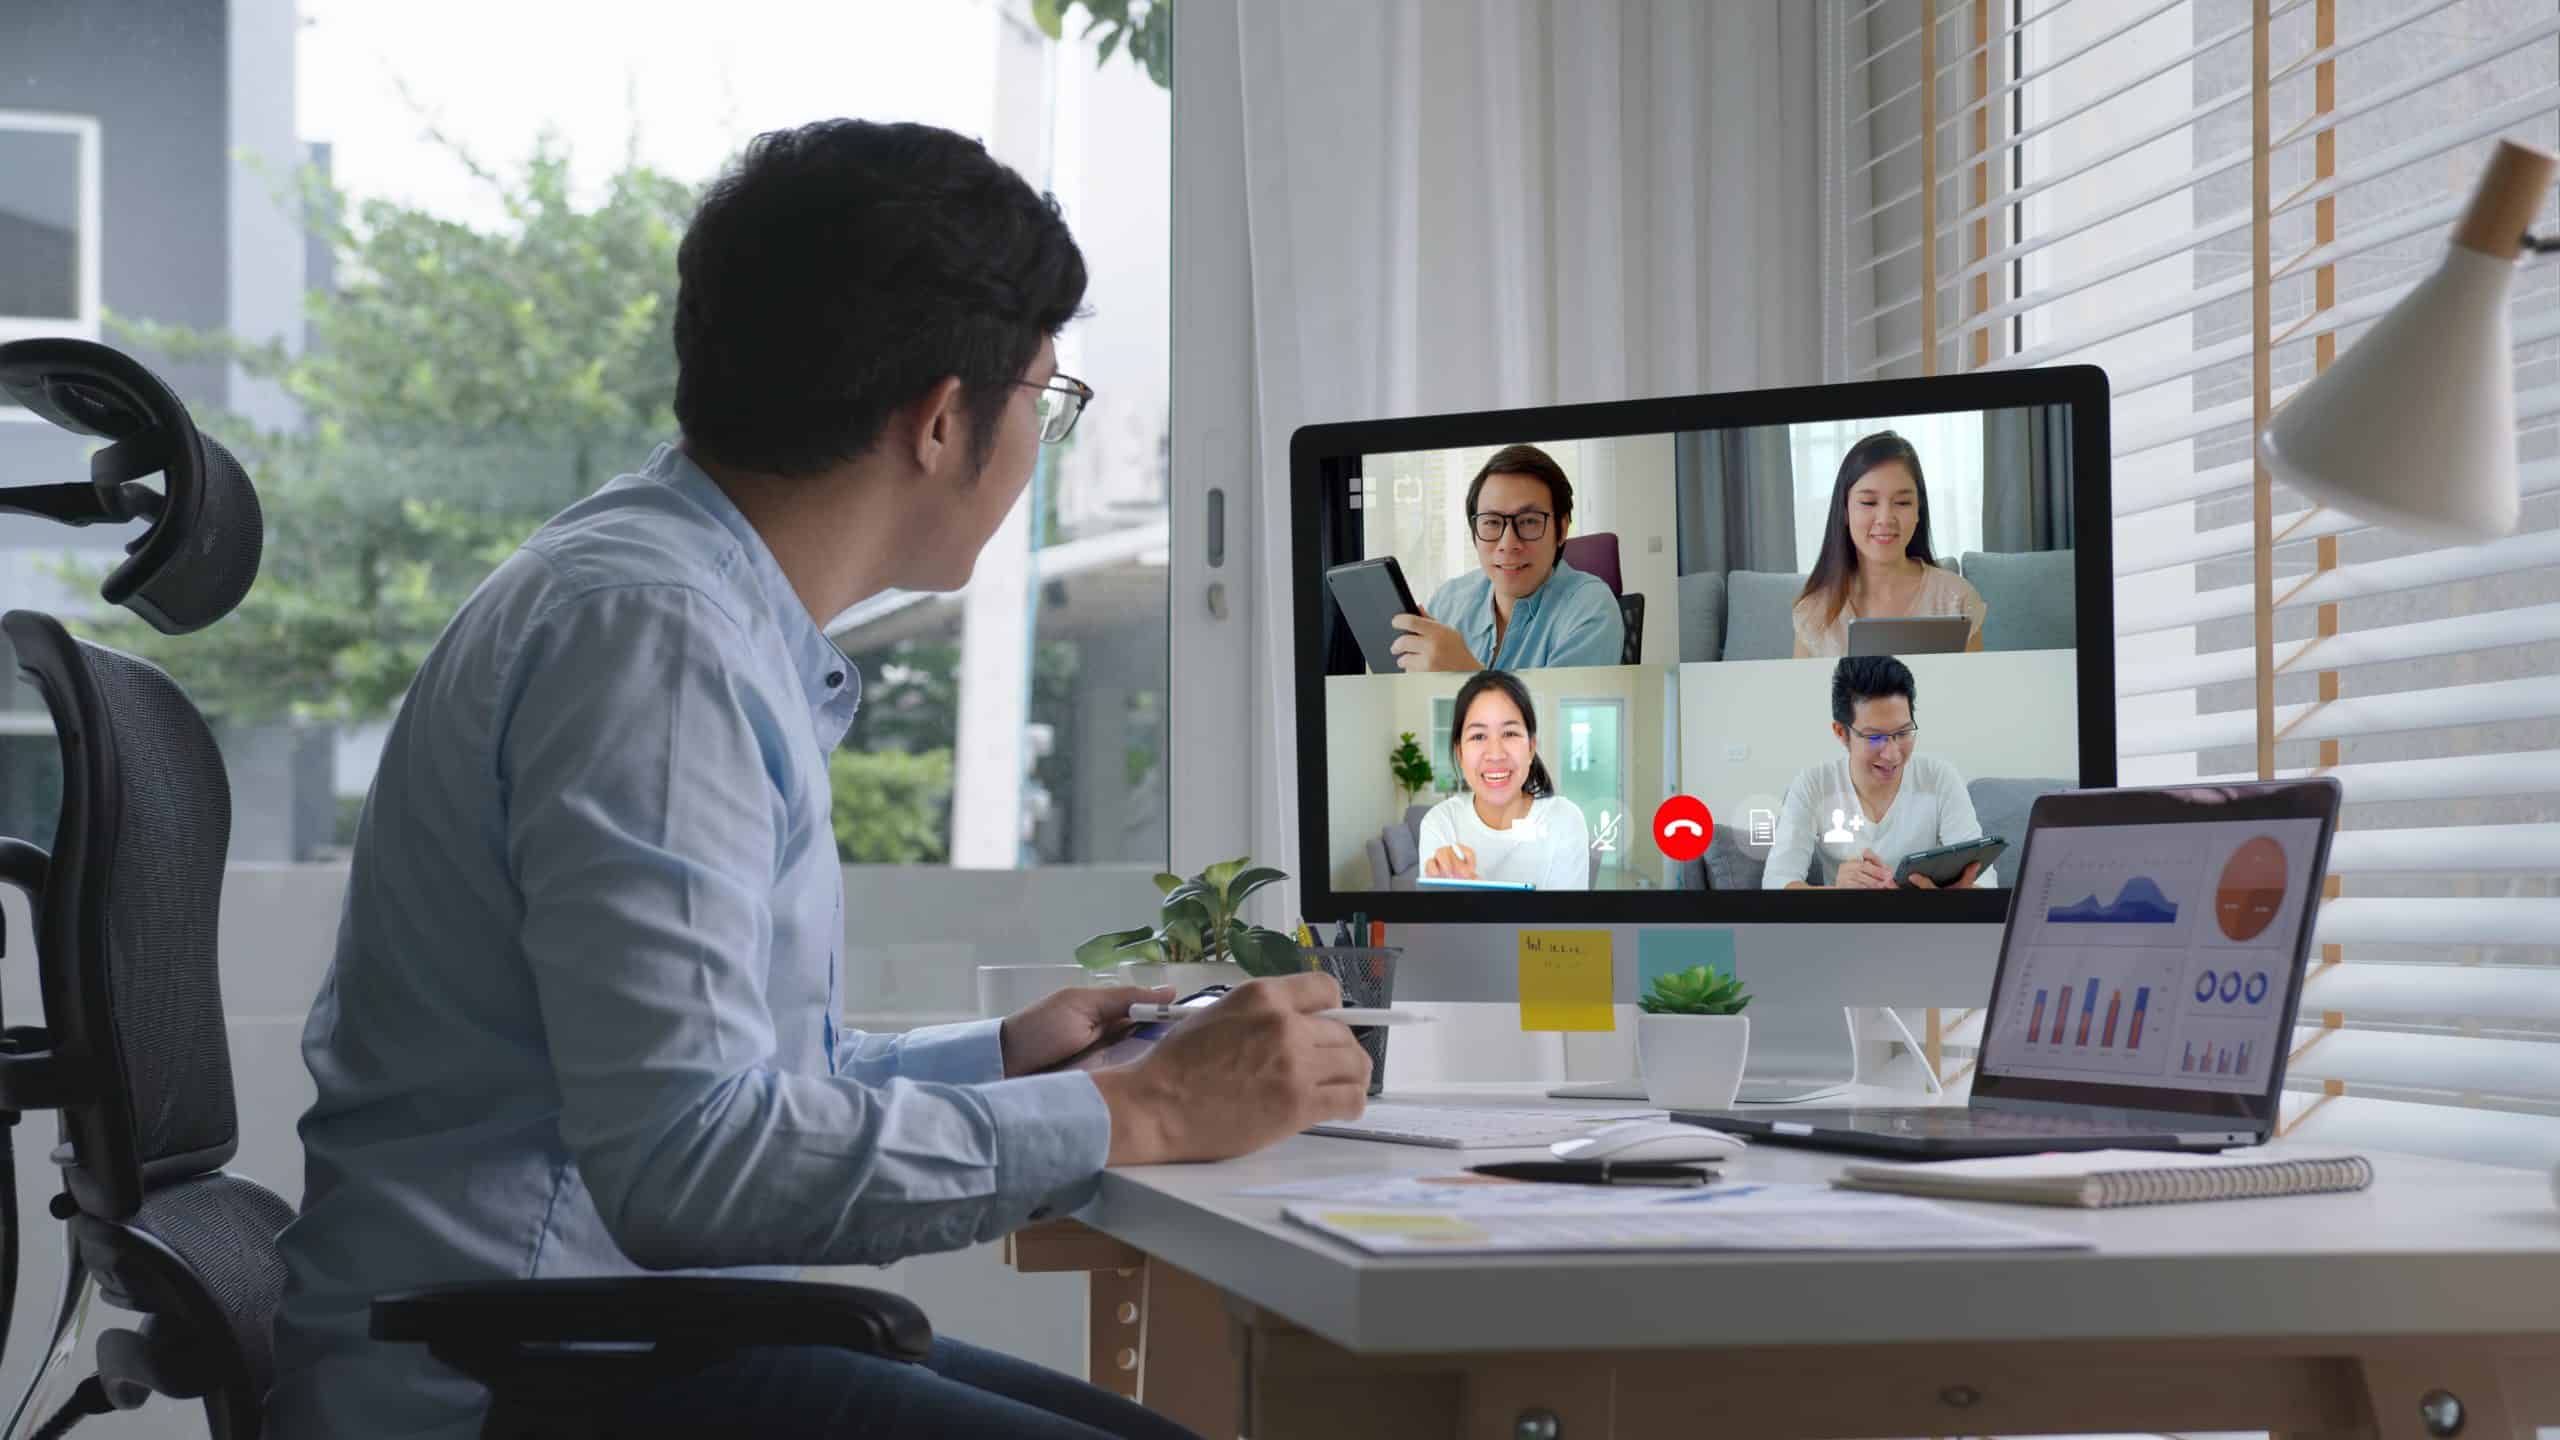 Improved efficiency with virtual meetings